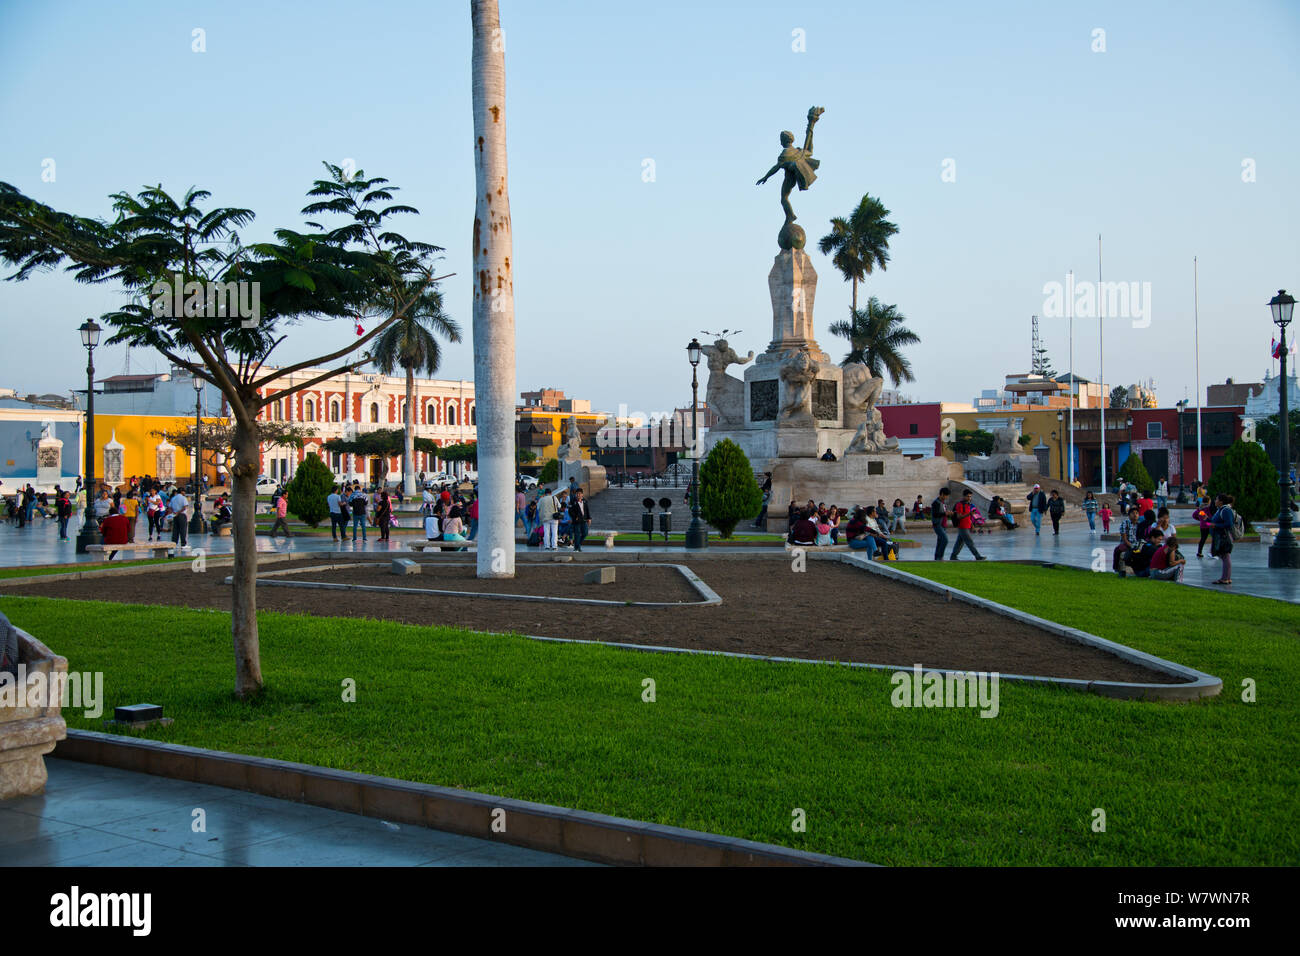 Trujillo, drittgrößte Stadt, Kathedrale, Quadrat, koloniale wichtige Gebäude, Norden von Peru, Südamerika Stockfoto